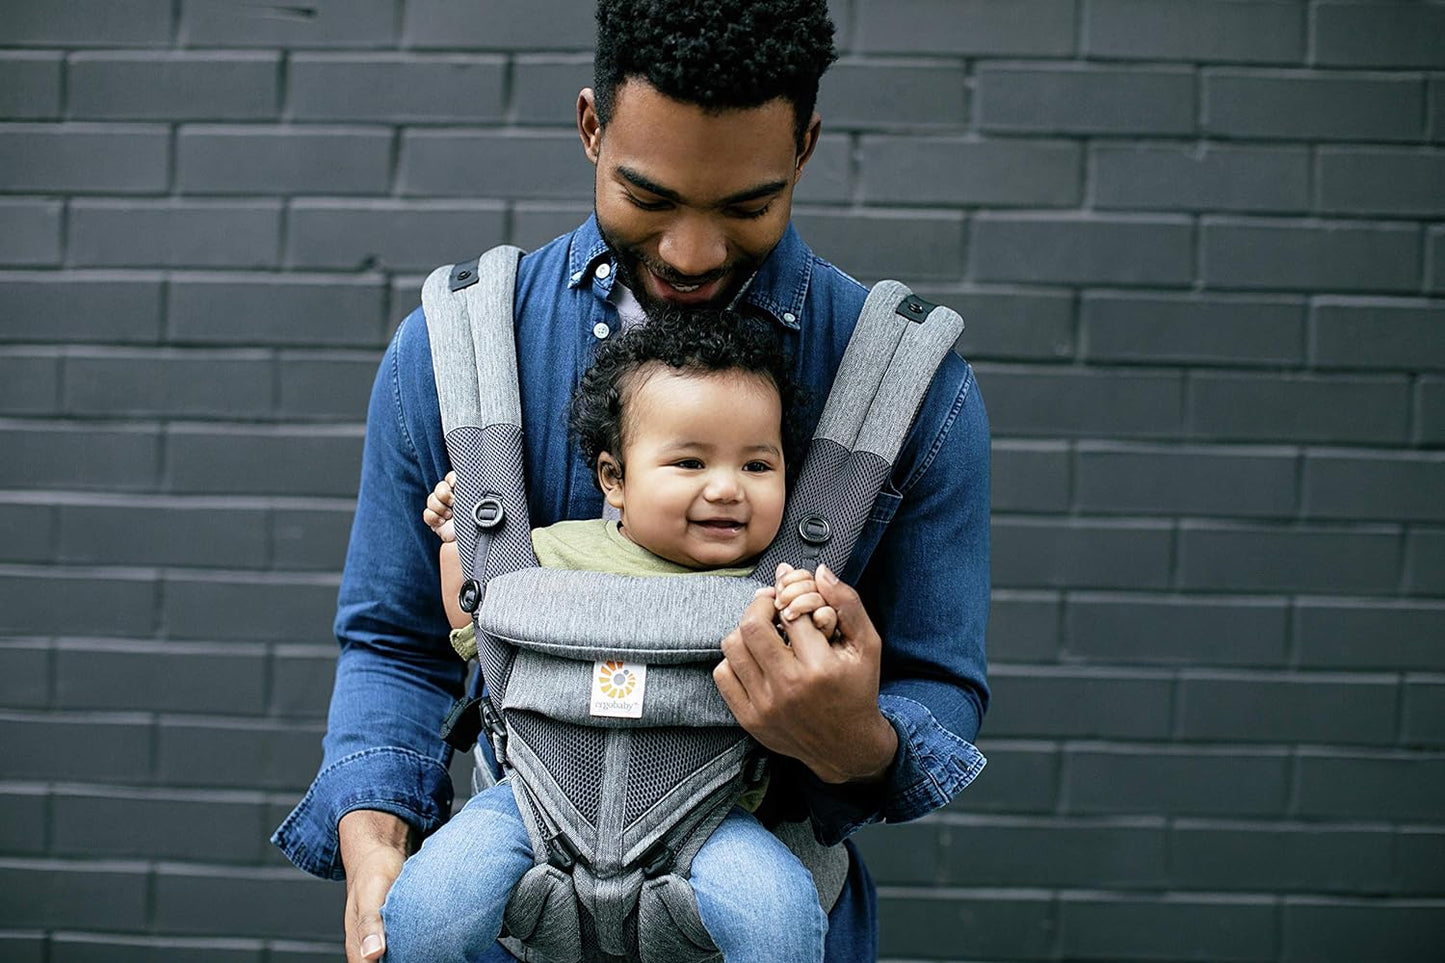 Ergobaby Porta-bebês para recém-nascidos e crianças pequenas, mochila ergonômica para carregar crianças com malha de ar frio Omni 360 de 4 posições, tecido clássico